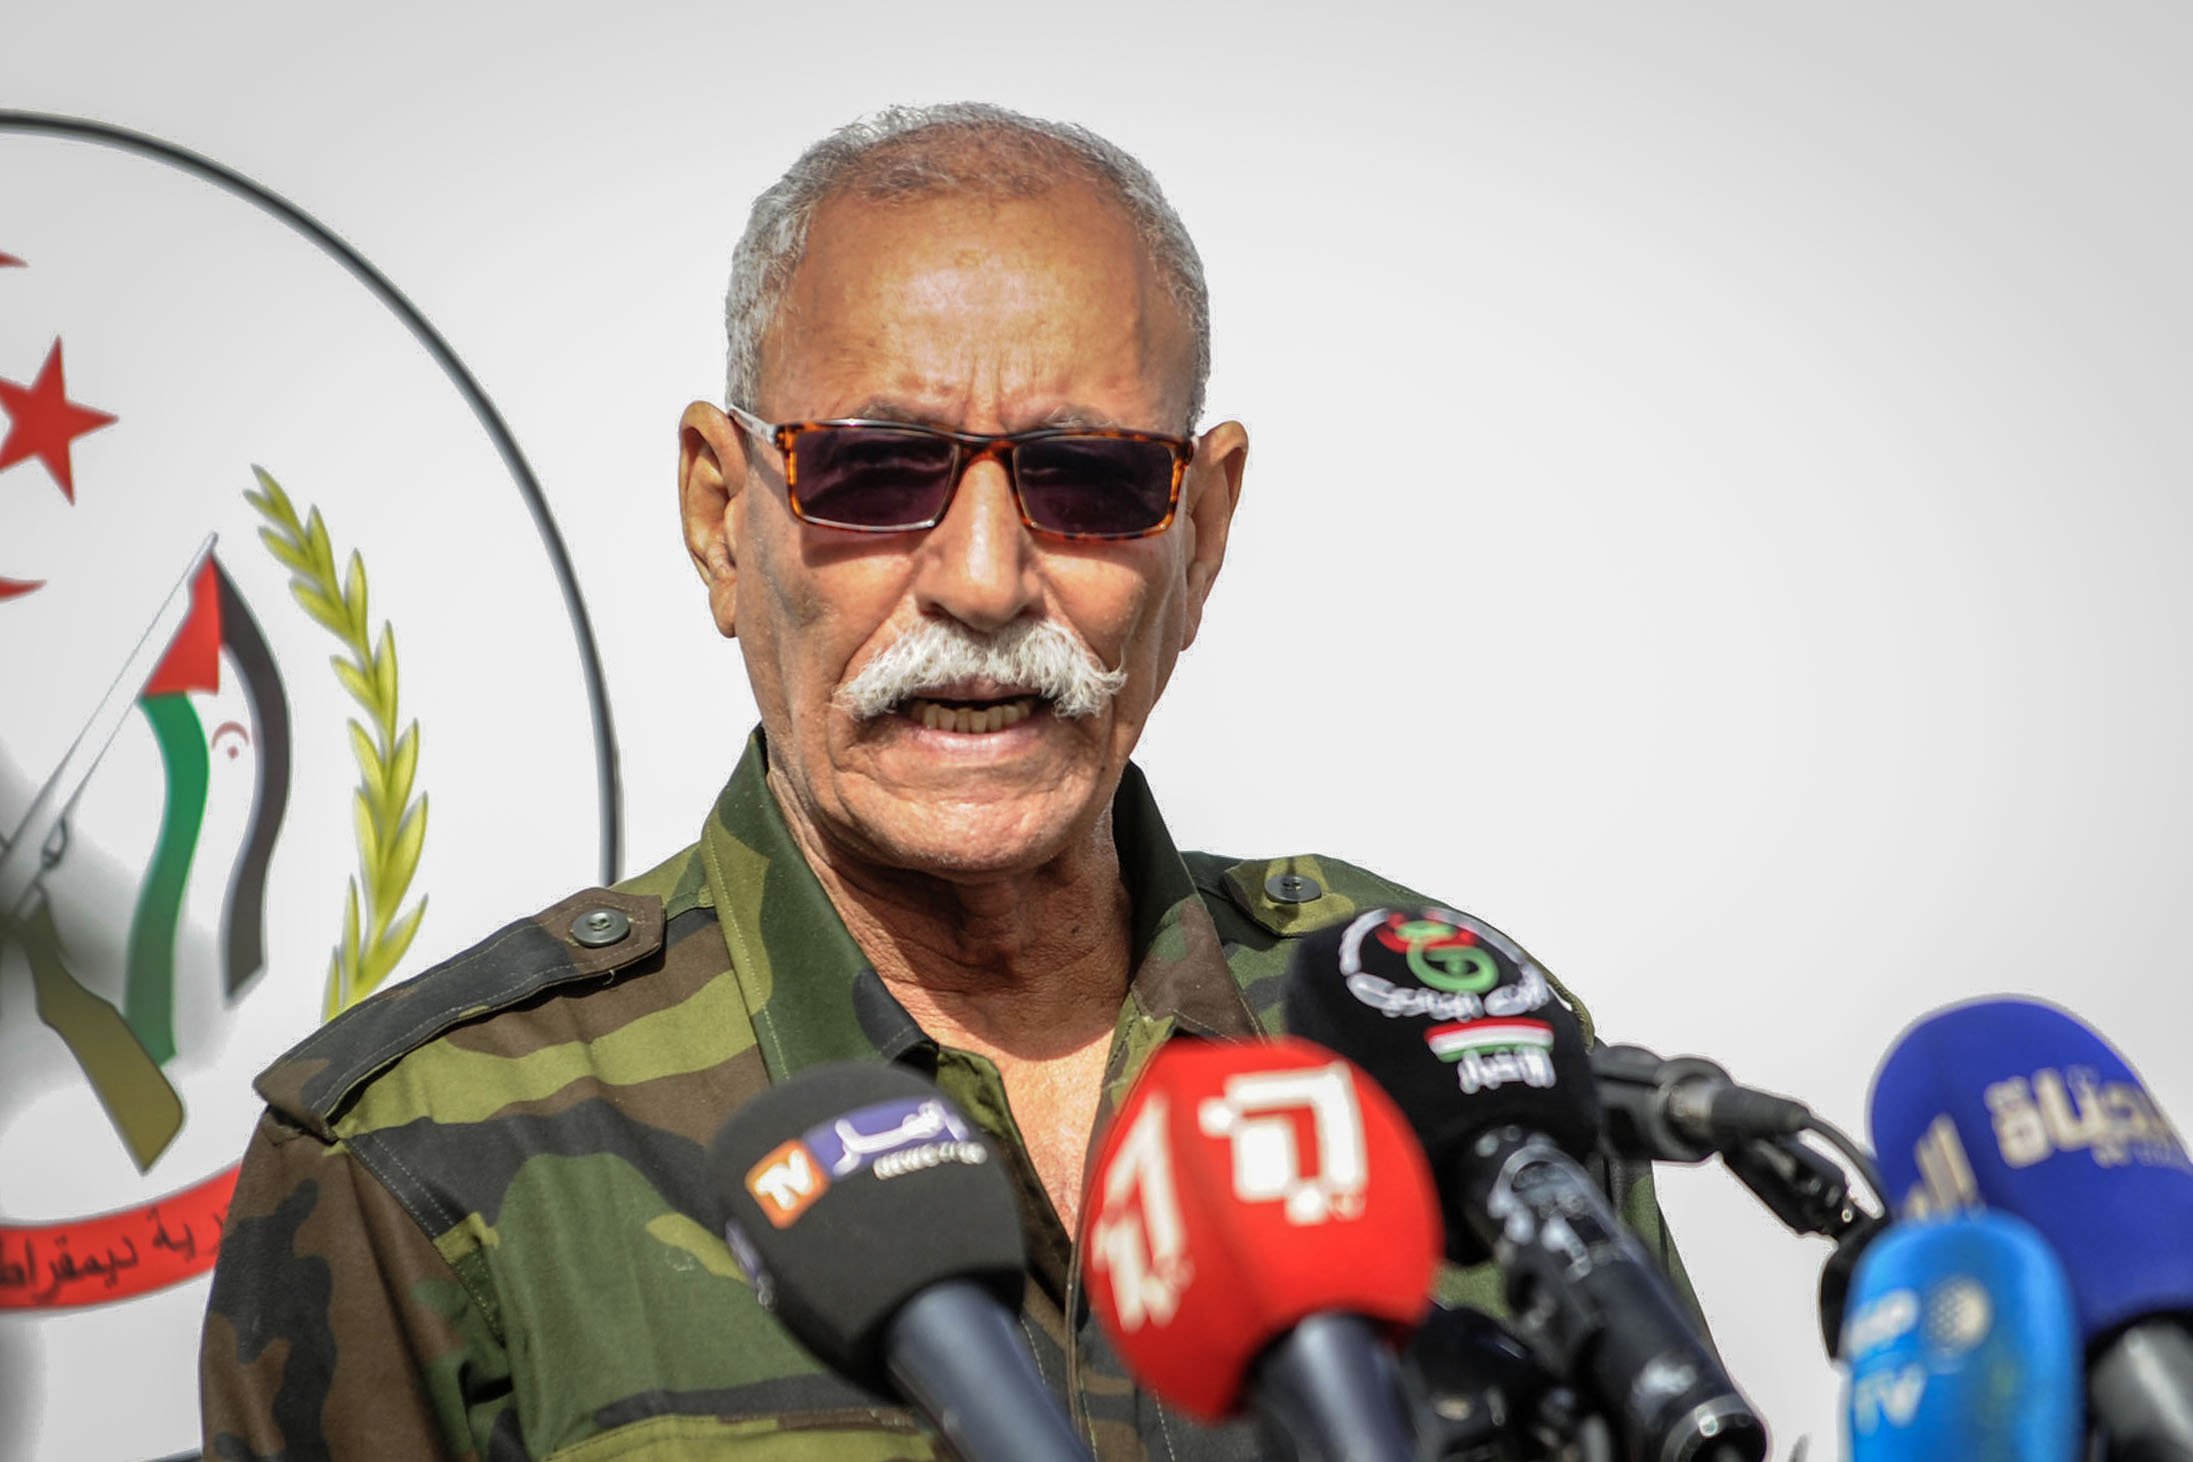 El líder del Front Polisario, Brahim Ghali, ja és a Algèria